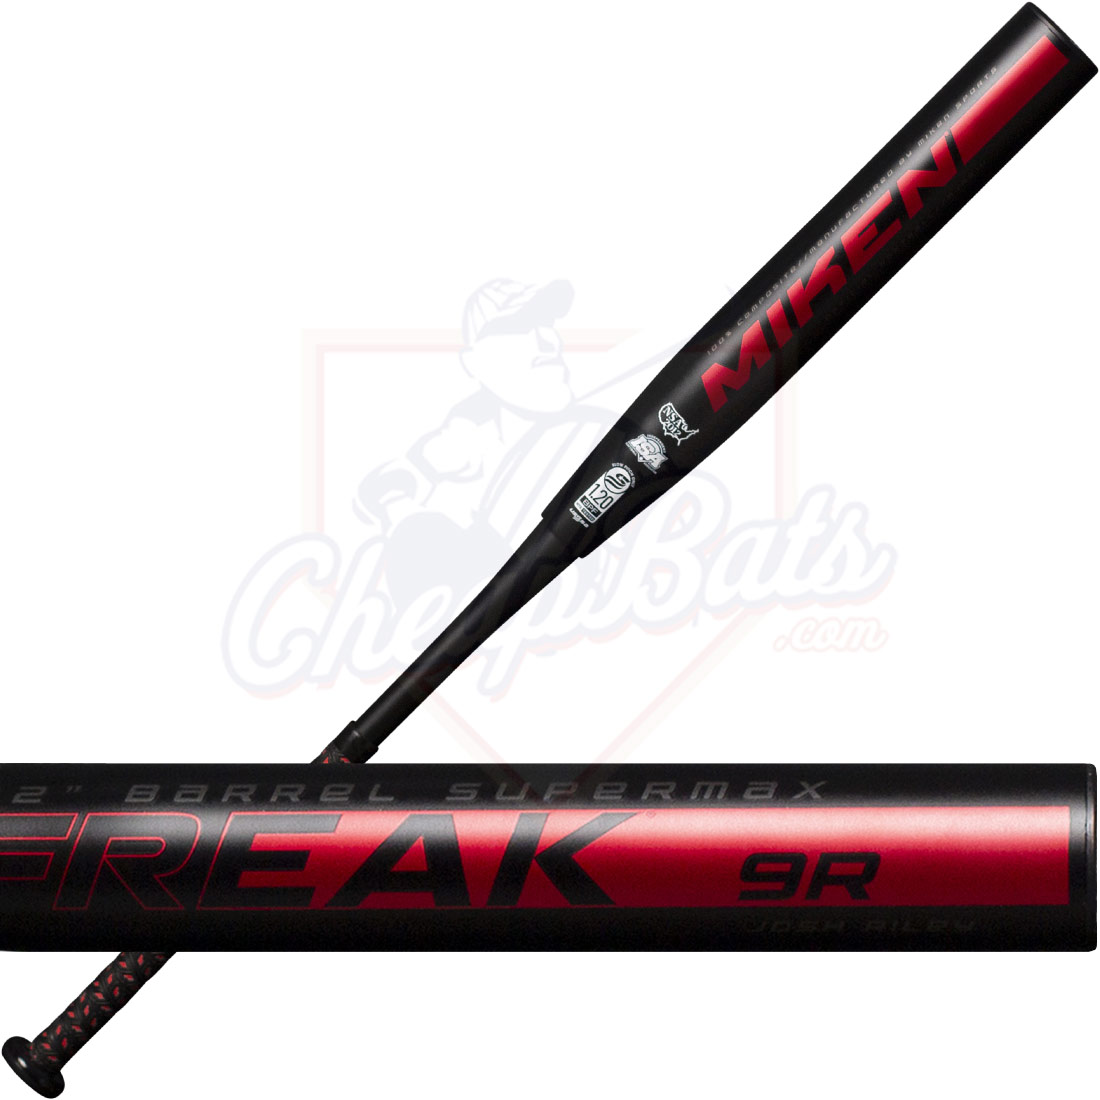 2021 Miken Freak 9 Slowpitch Softball Bat Supermax USSSA MJR21U